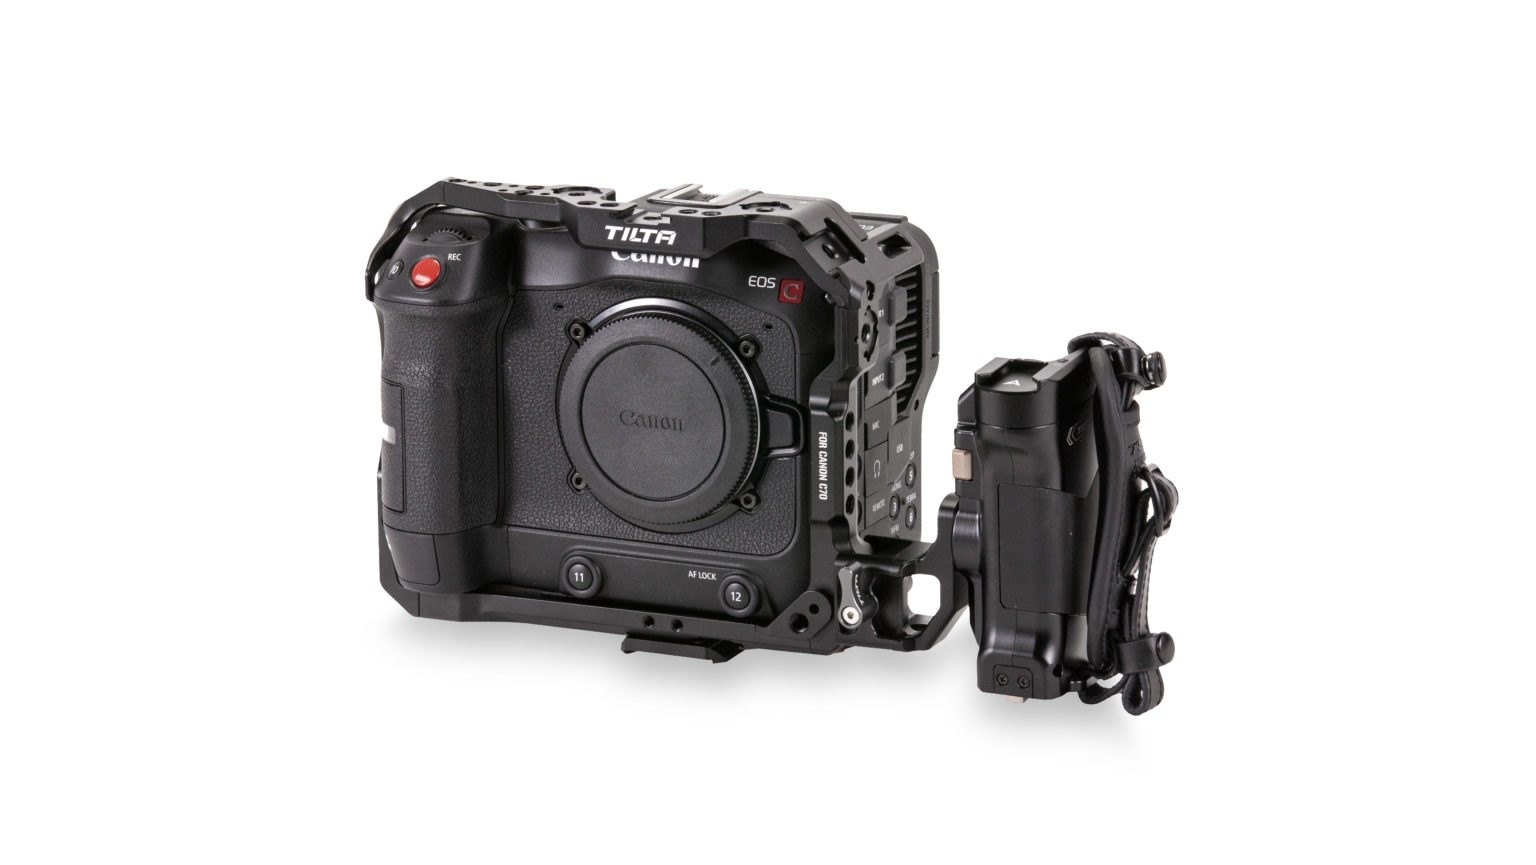 Tilta Tiltaing Canon C70 Handheld Kit (Black)